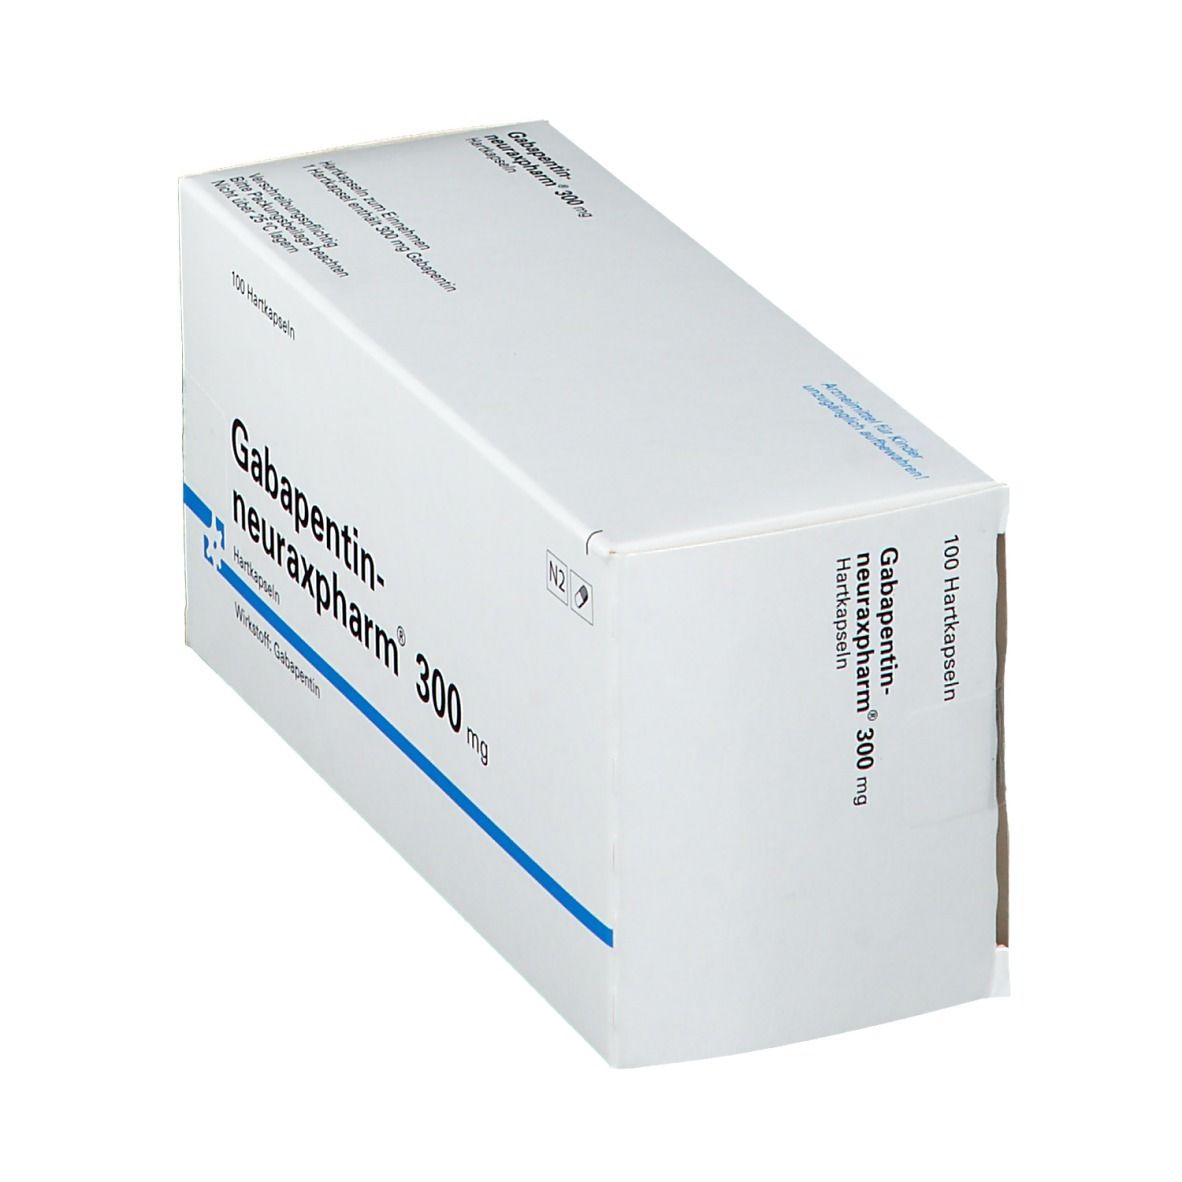 Gabapentin-neuraxpharm® 300 mg